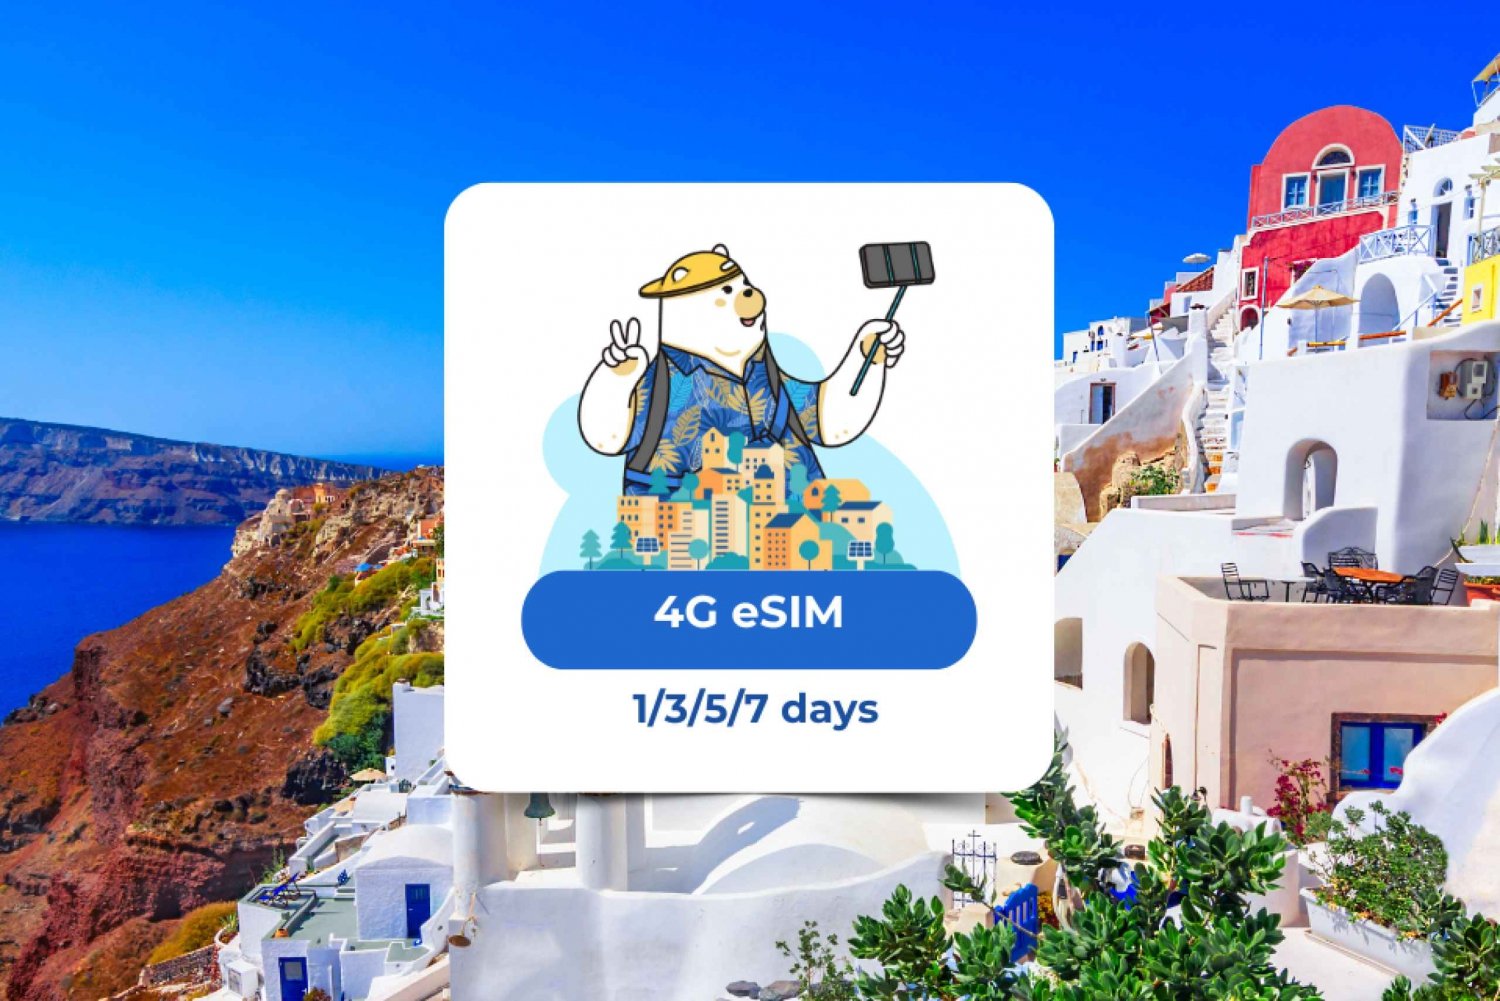 Europa: eSIM Datos móviles (40 países) 1/3/5/7 días